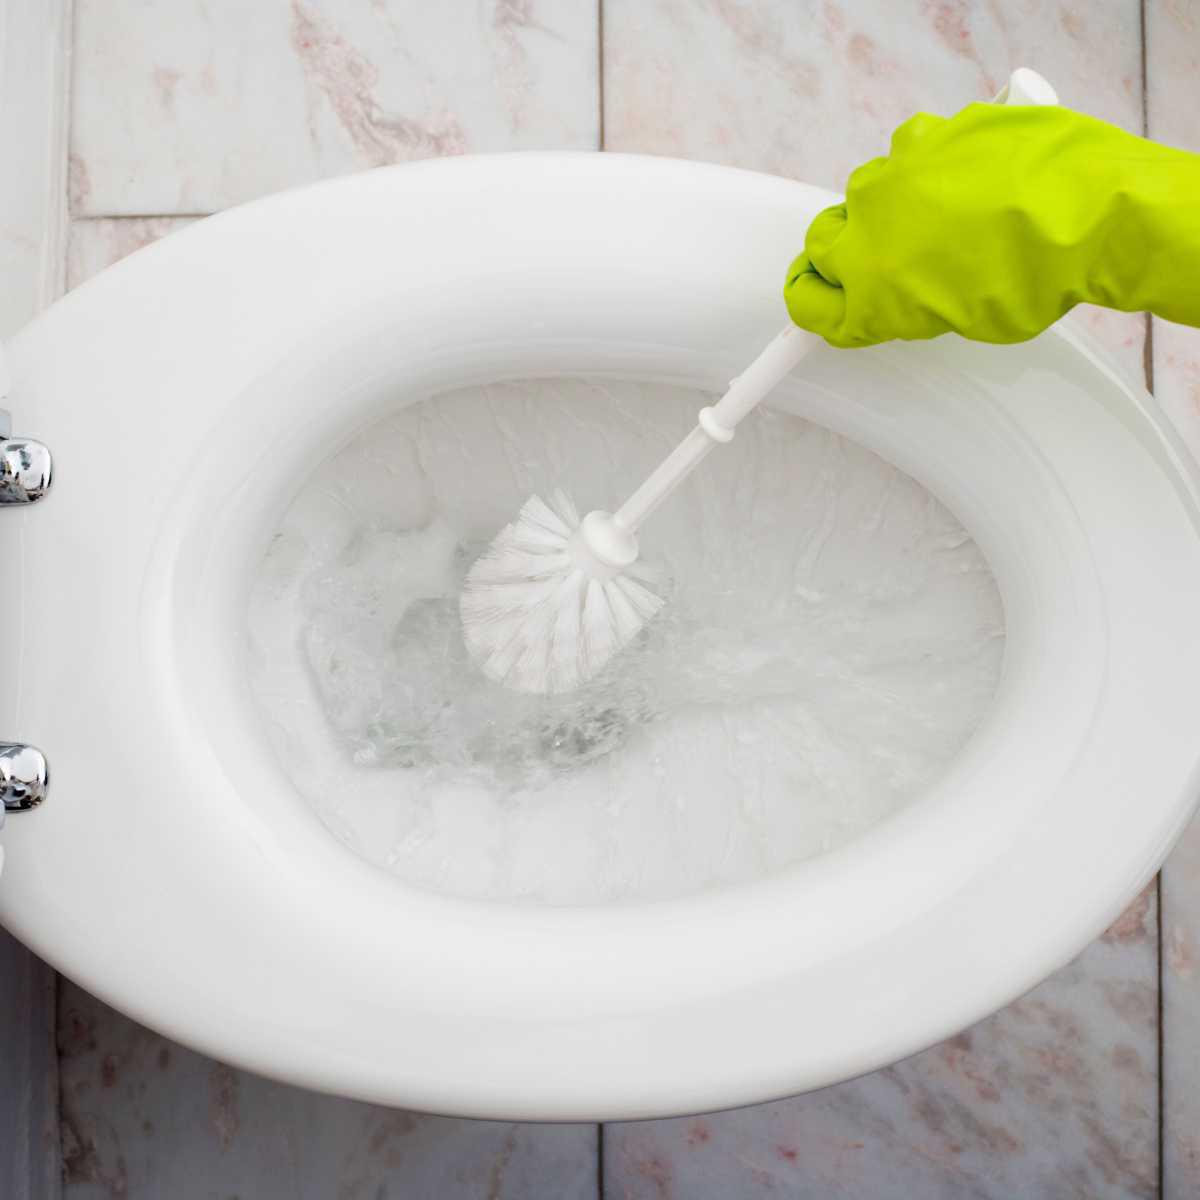 Limpeza, desinfeção e desodorização das sanitas